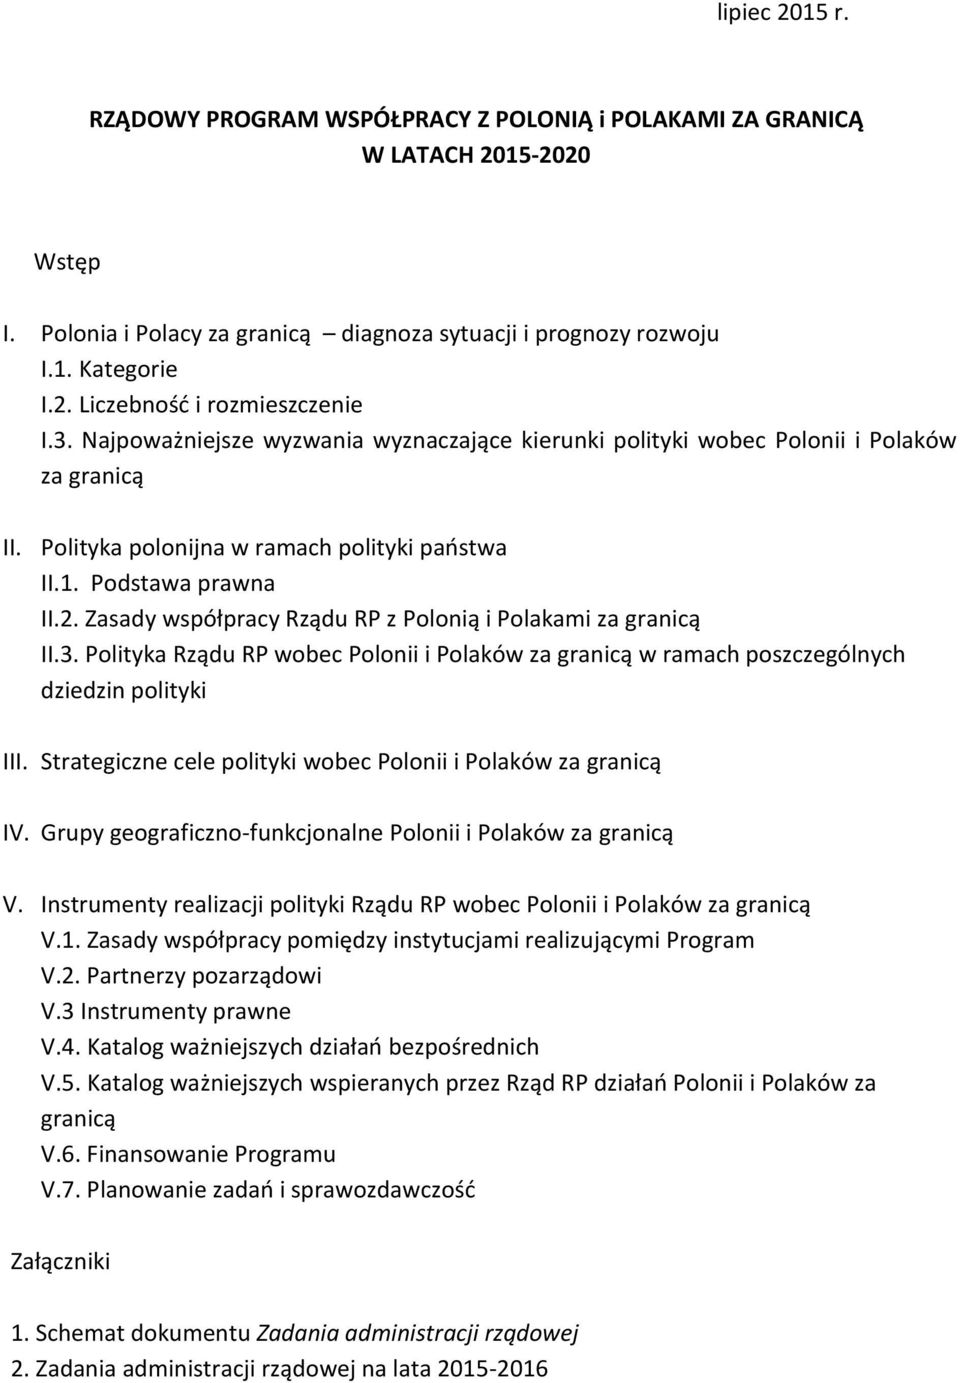 Zasady współpracy Rządu RP z Polonią i Polakami za granicą II.3. Polityka Rządu RP wobec Polonii i Polaków za granicą w ramach poszczególnych dziedzin polityki III.